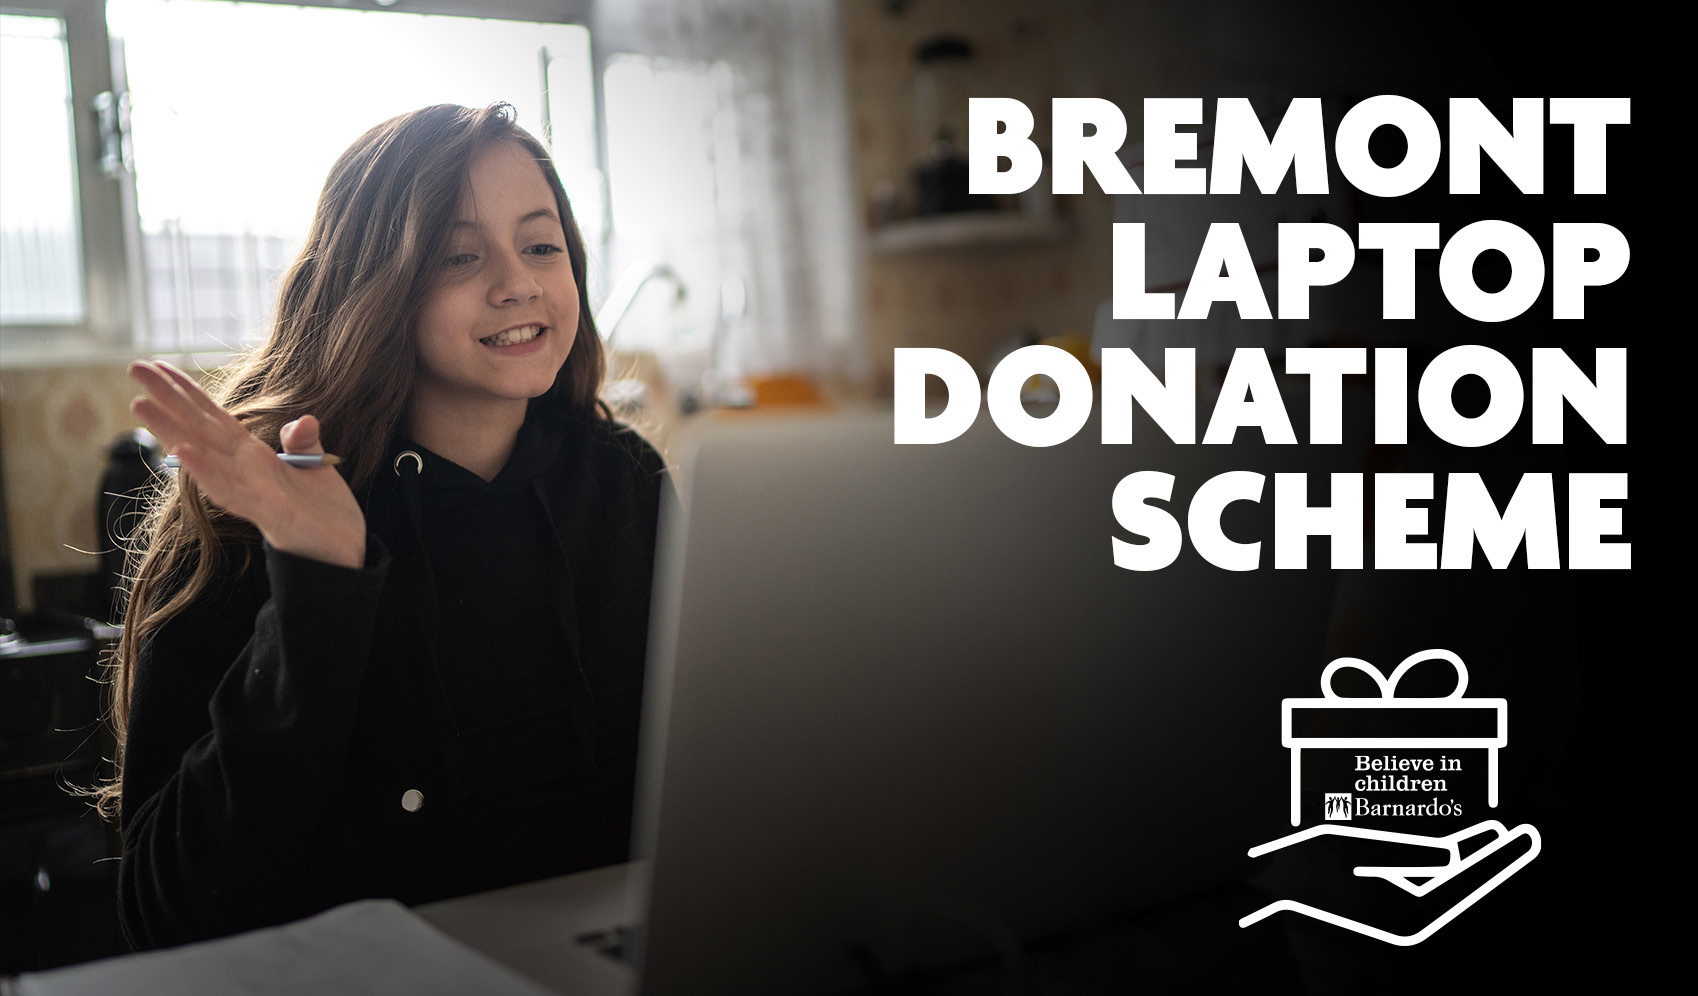 Bremont laptop donation